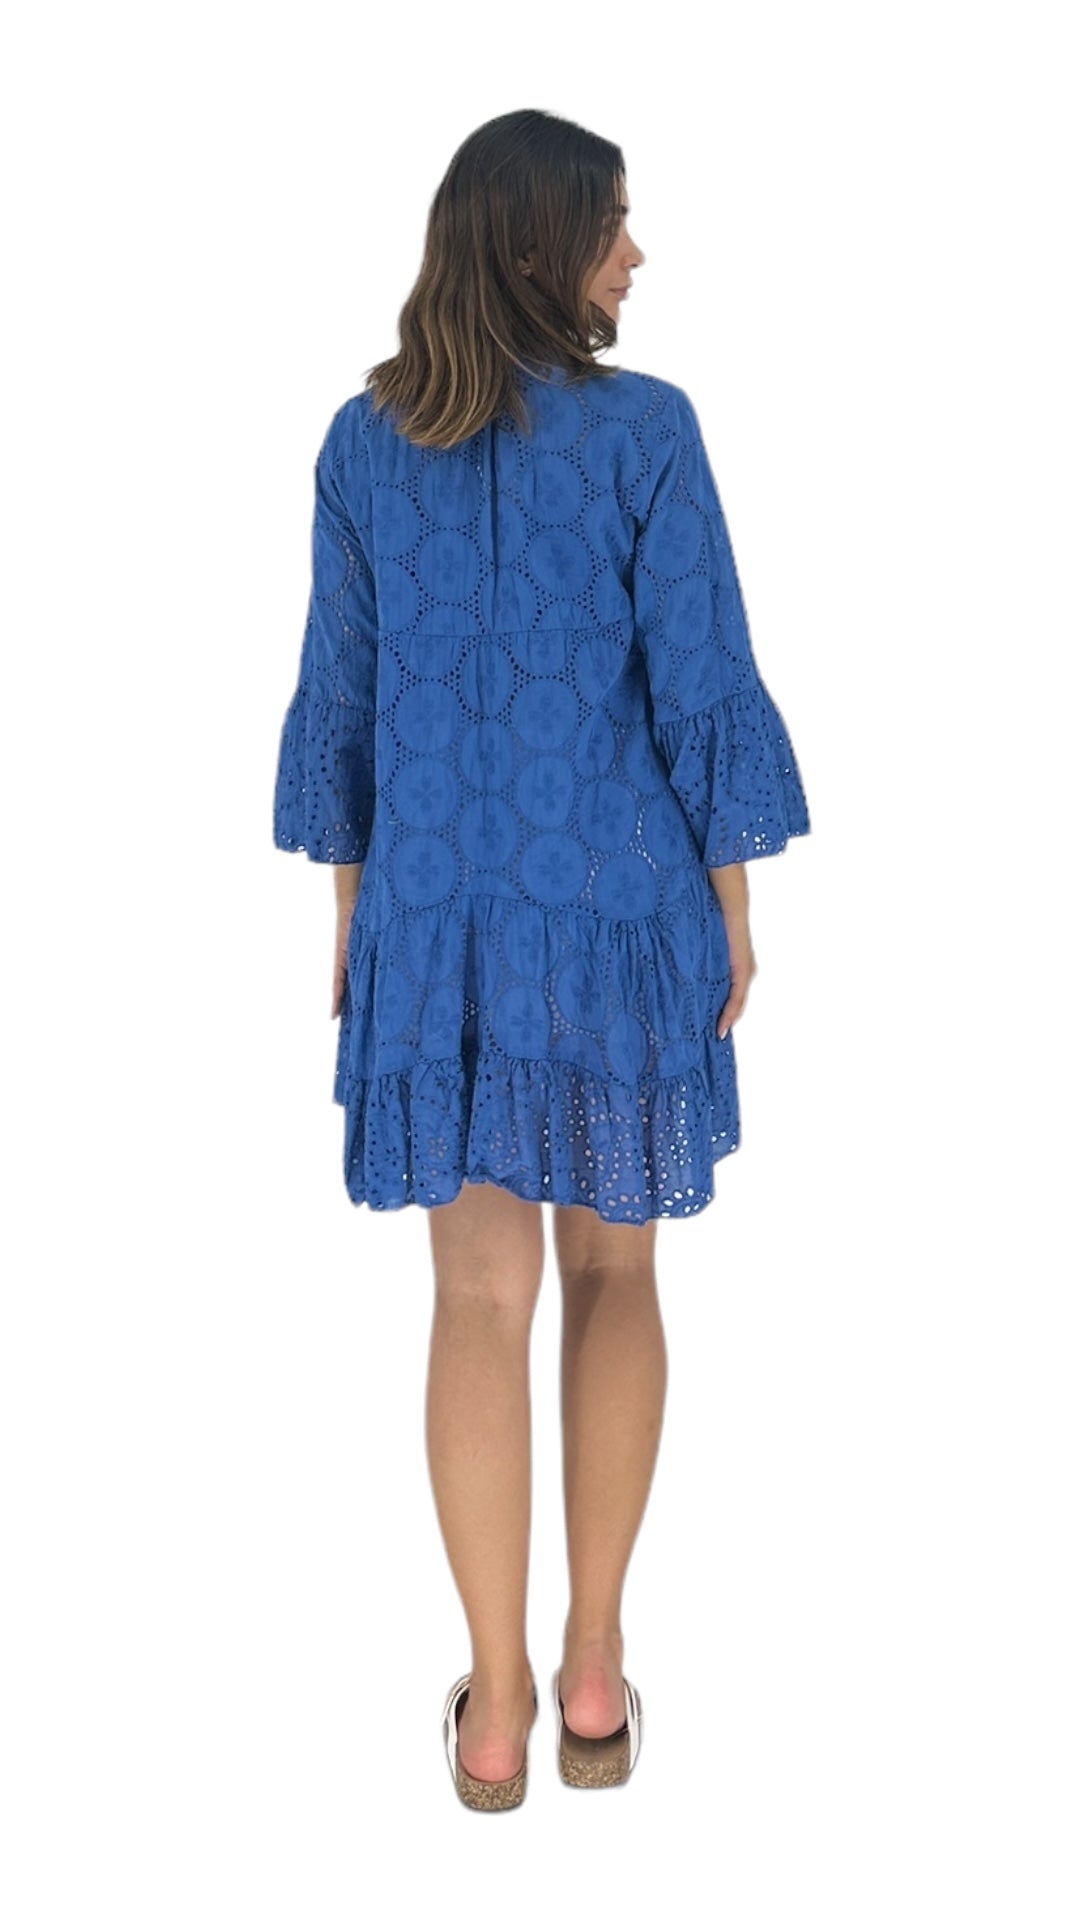 Petal dress in blue